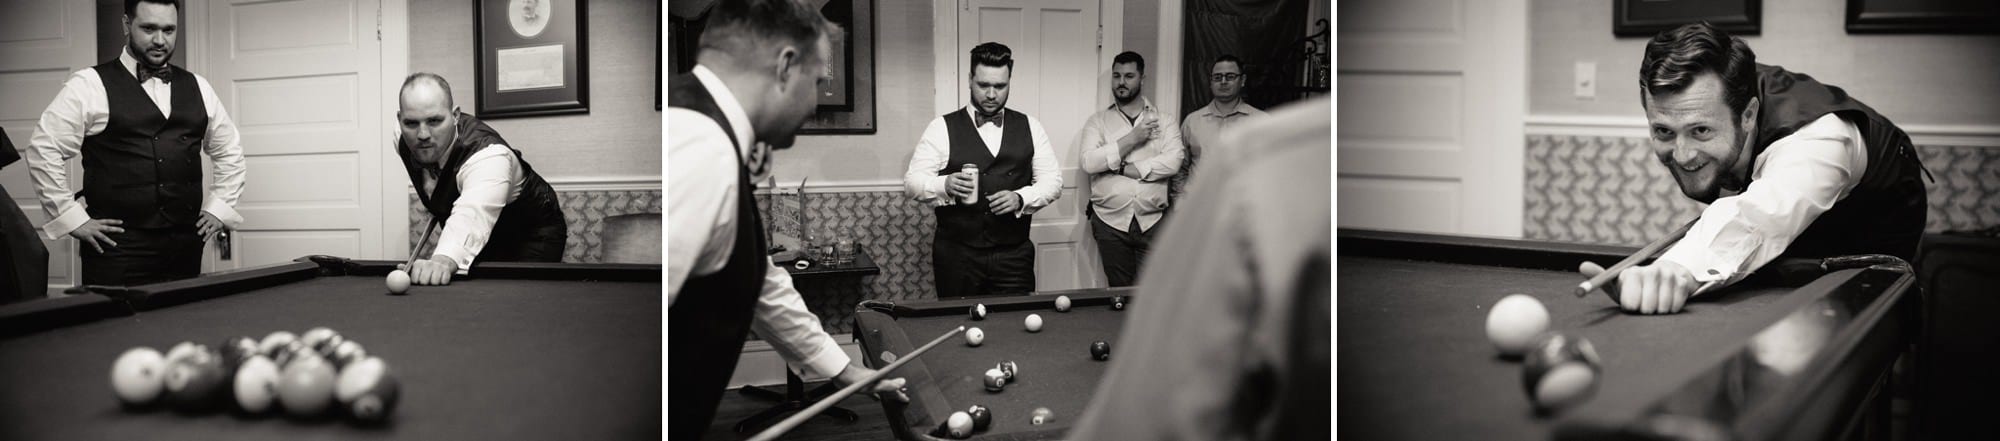 groomsmen playing pool